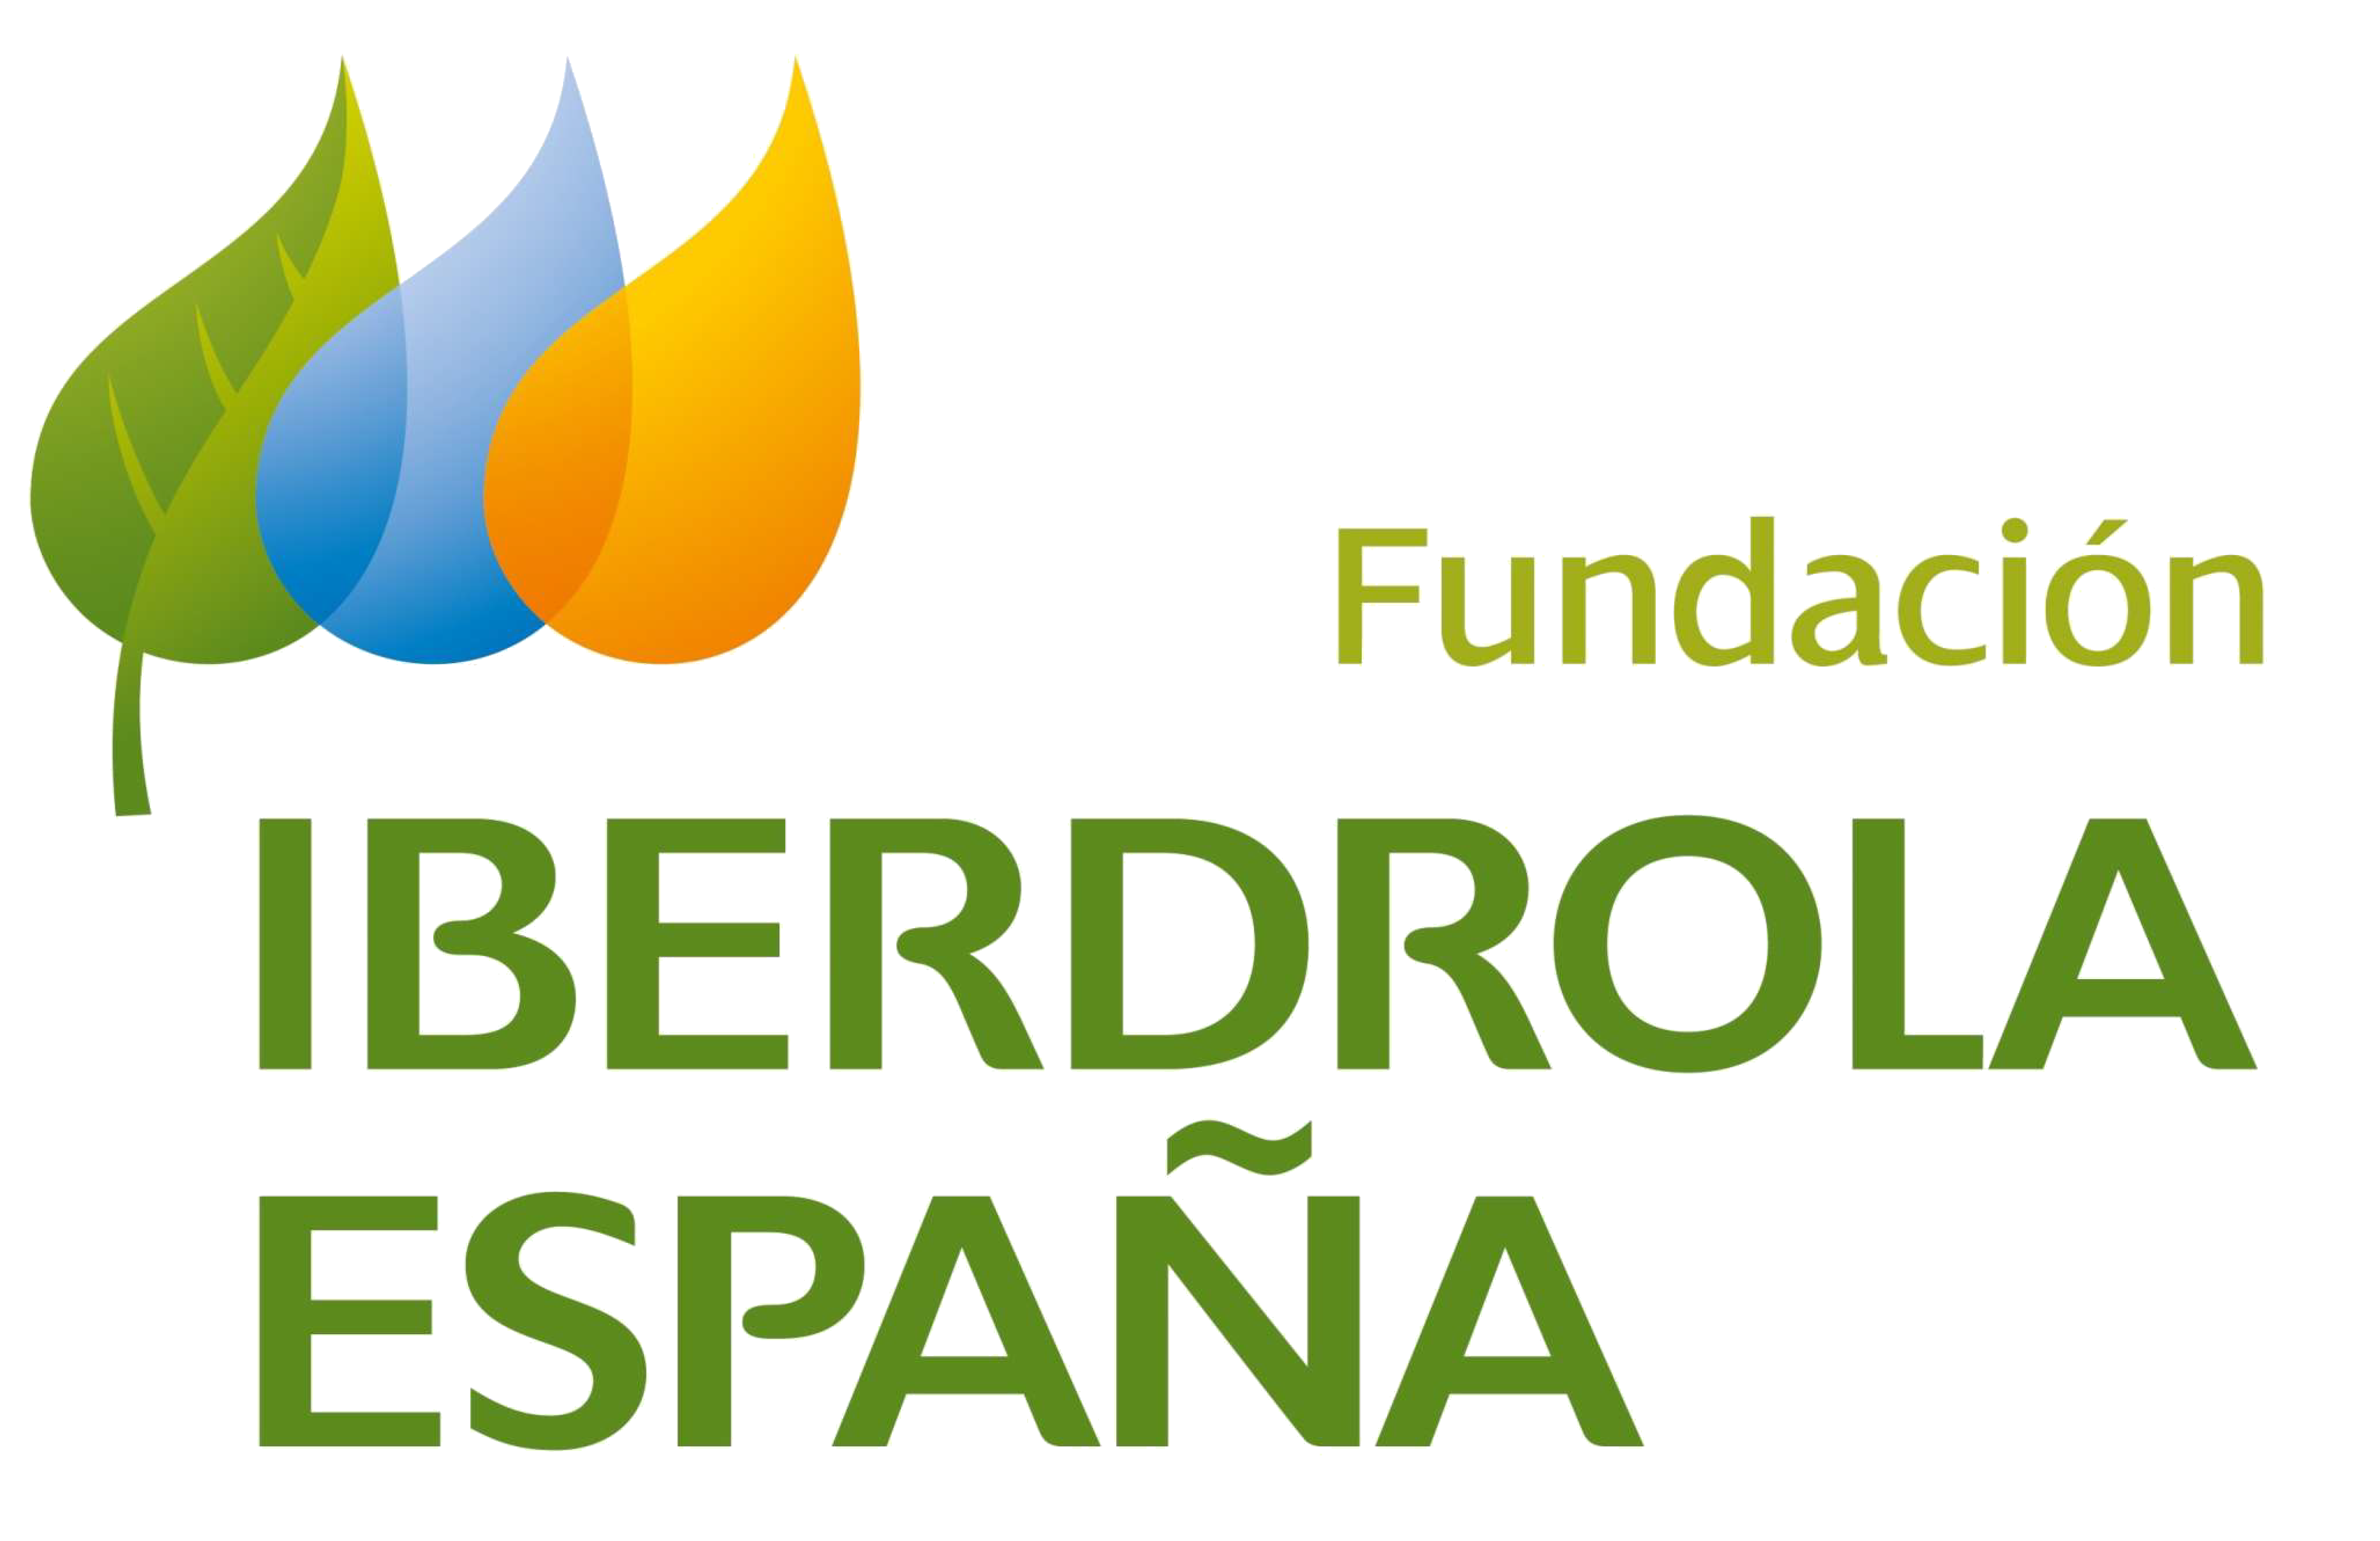 Fundación Iberdrola España Logotipo